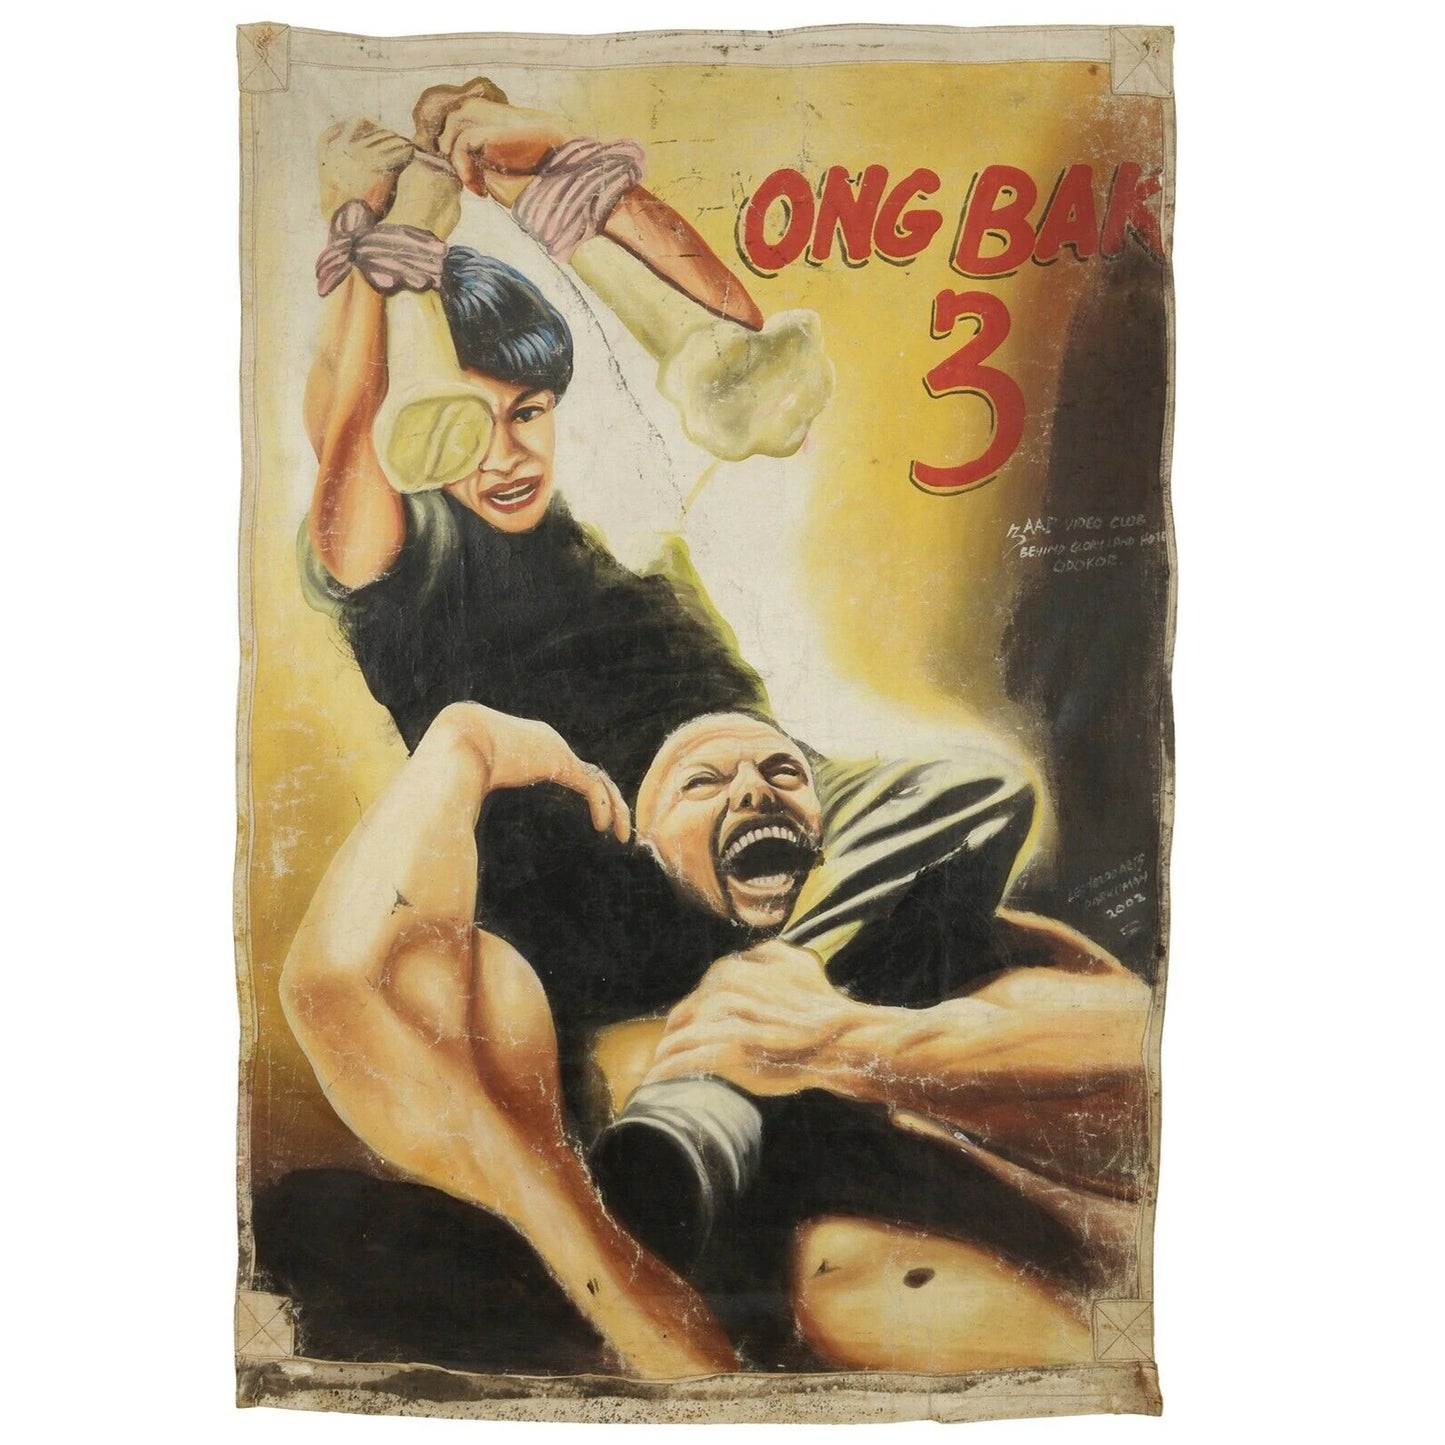 Αφίσα ζωγραφισμένη στο χέρι Ταινία Κινηματογράφος Γκάνα Αφρικανική ελαιογραφία λαϊκή τέχνη Ong Bag 3 - Tribalgh